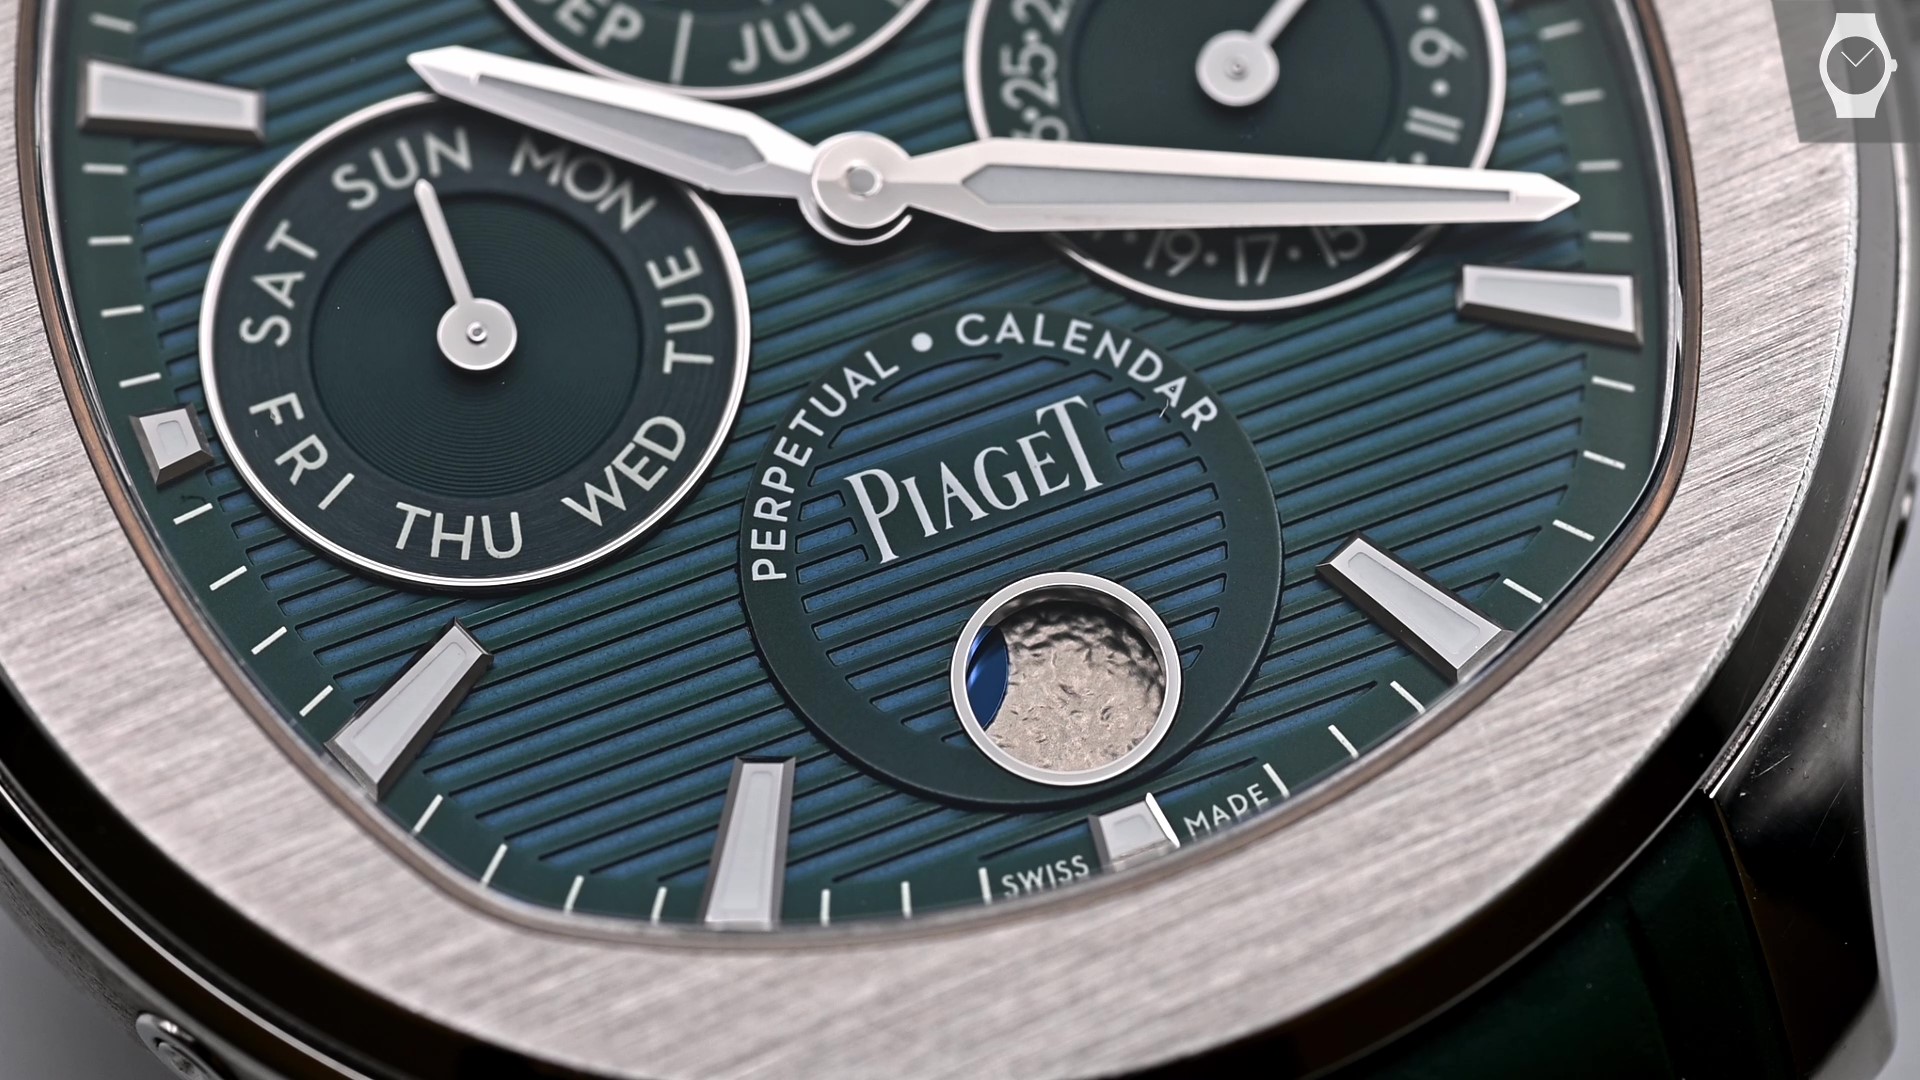 Piaget Polo Perpetual Calendar Mondphase Detail